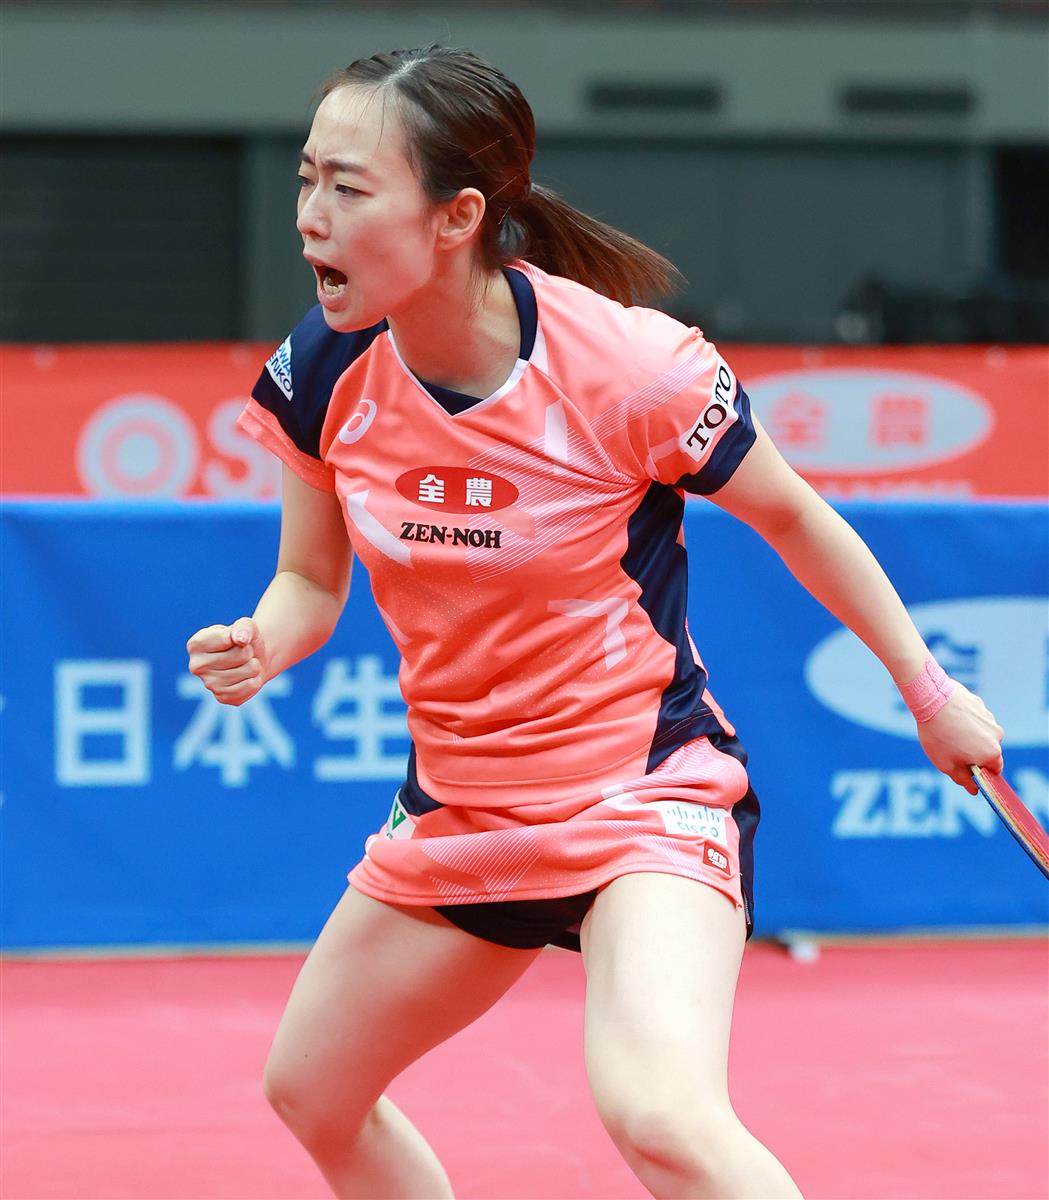 石川佳純 早田ひなは順当勝ち 全日本選手権 卓球 サンスポ